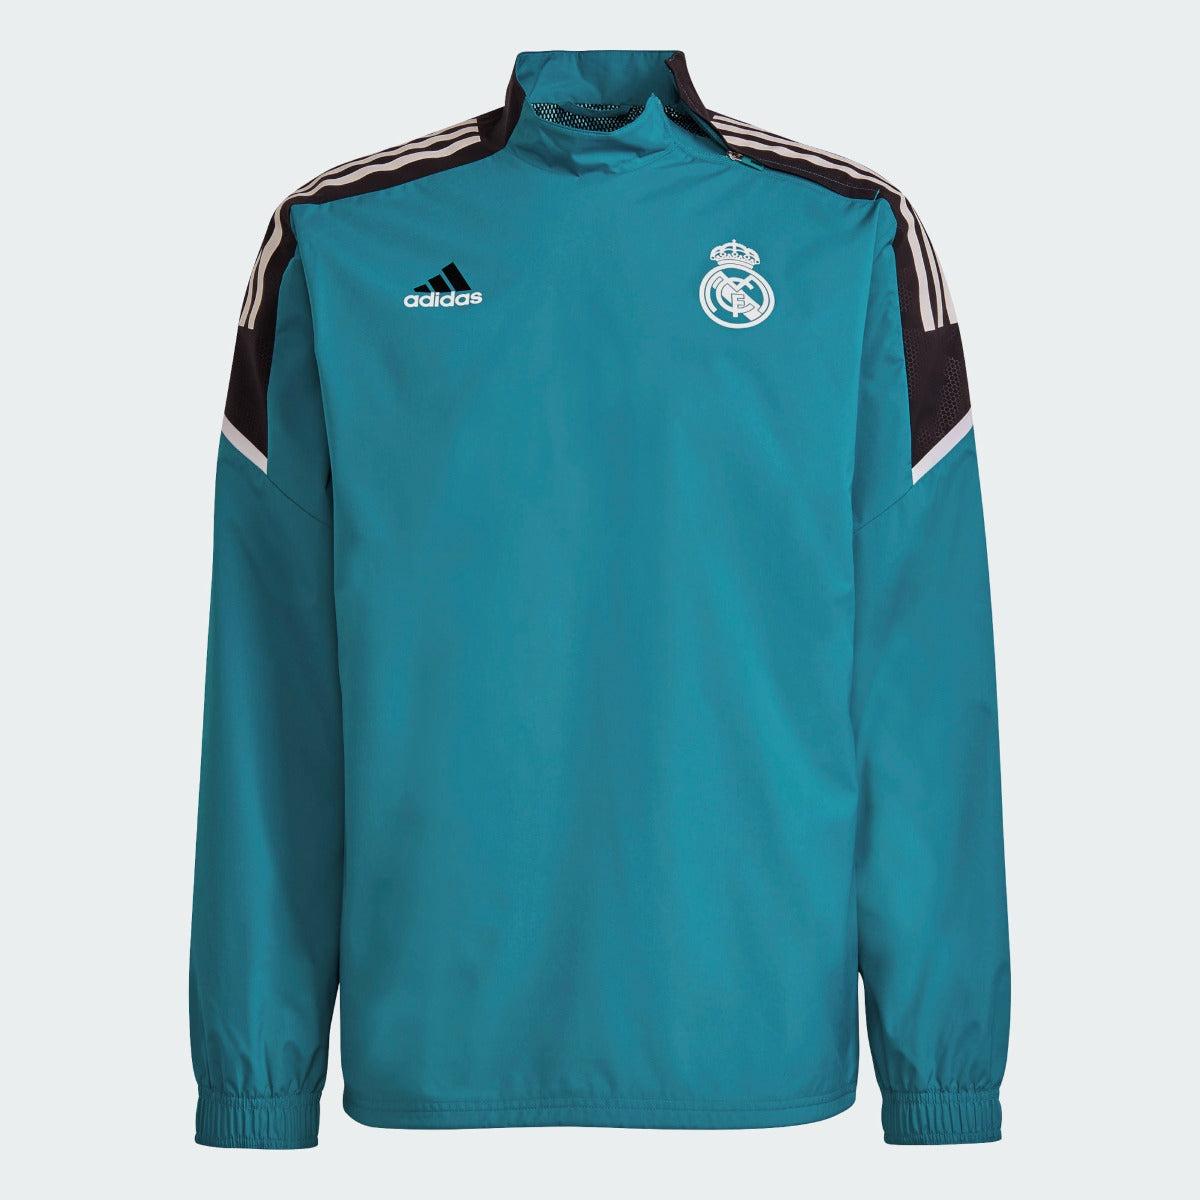 Adidas, Top ibrido adidas 2021-22 Real Madrid EU - verde acqua, nero